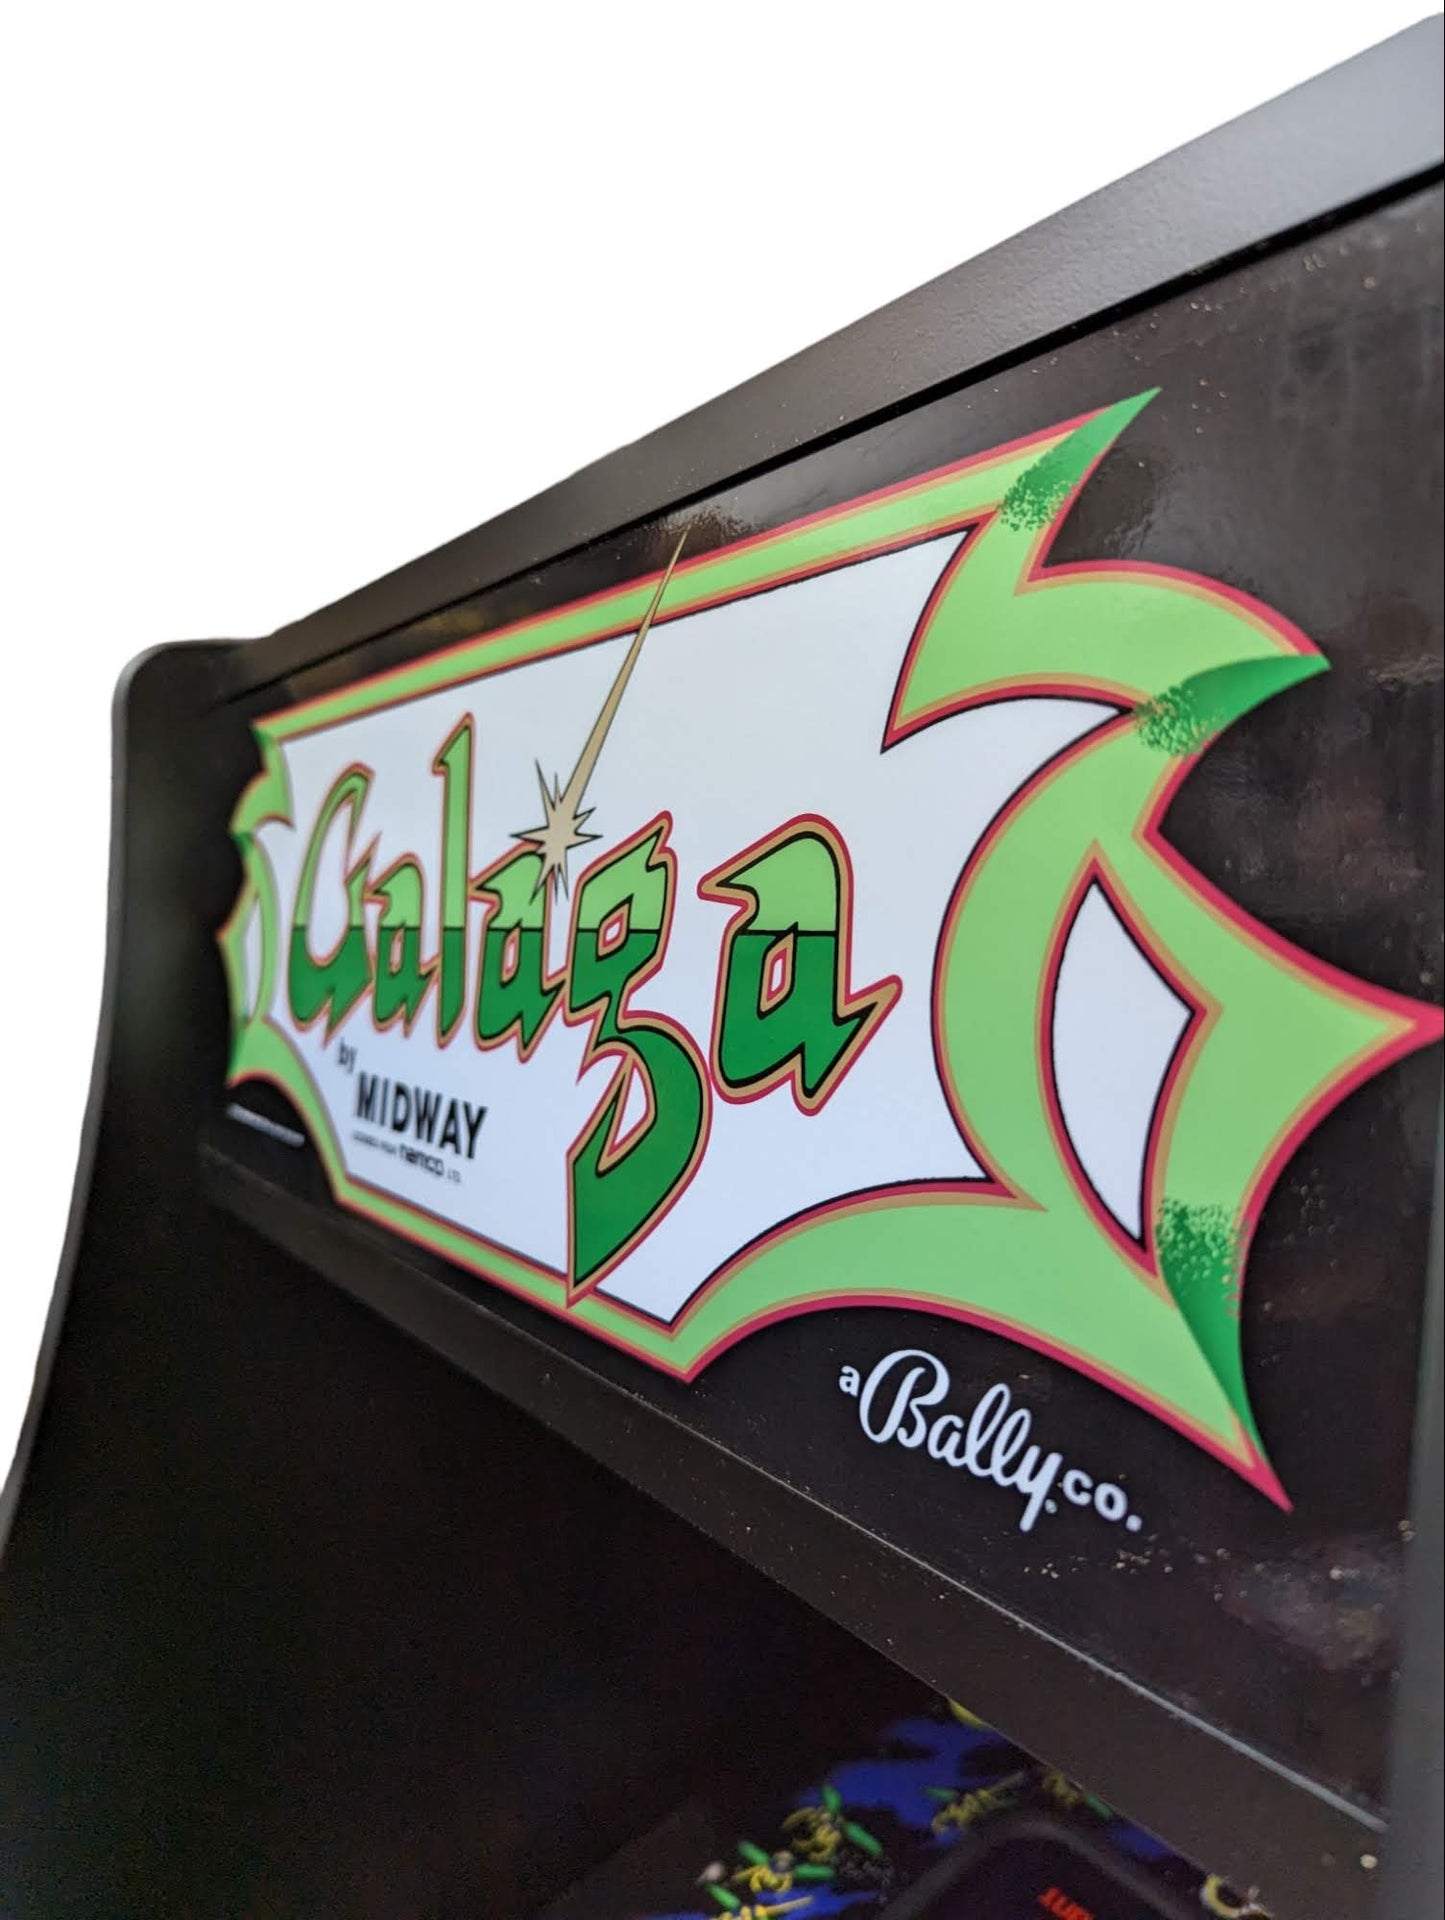 Galaga Arcade Machine - Accurate replica